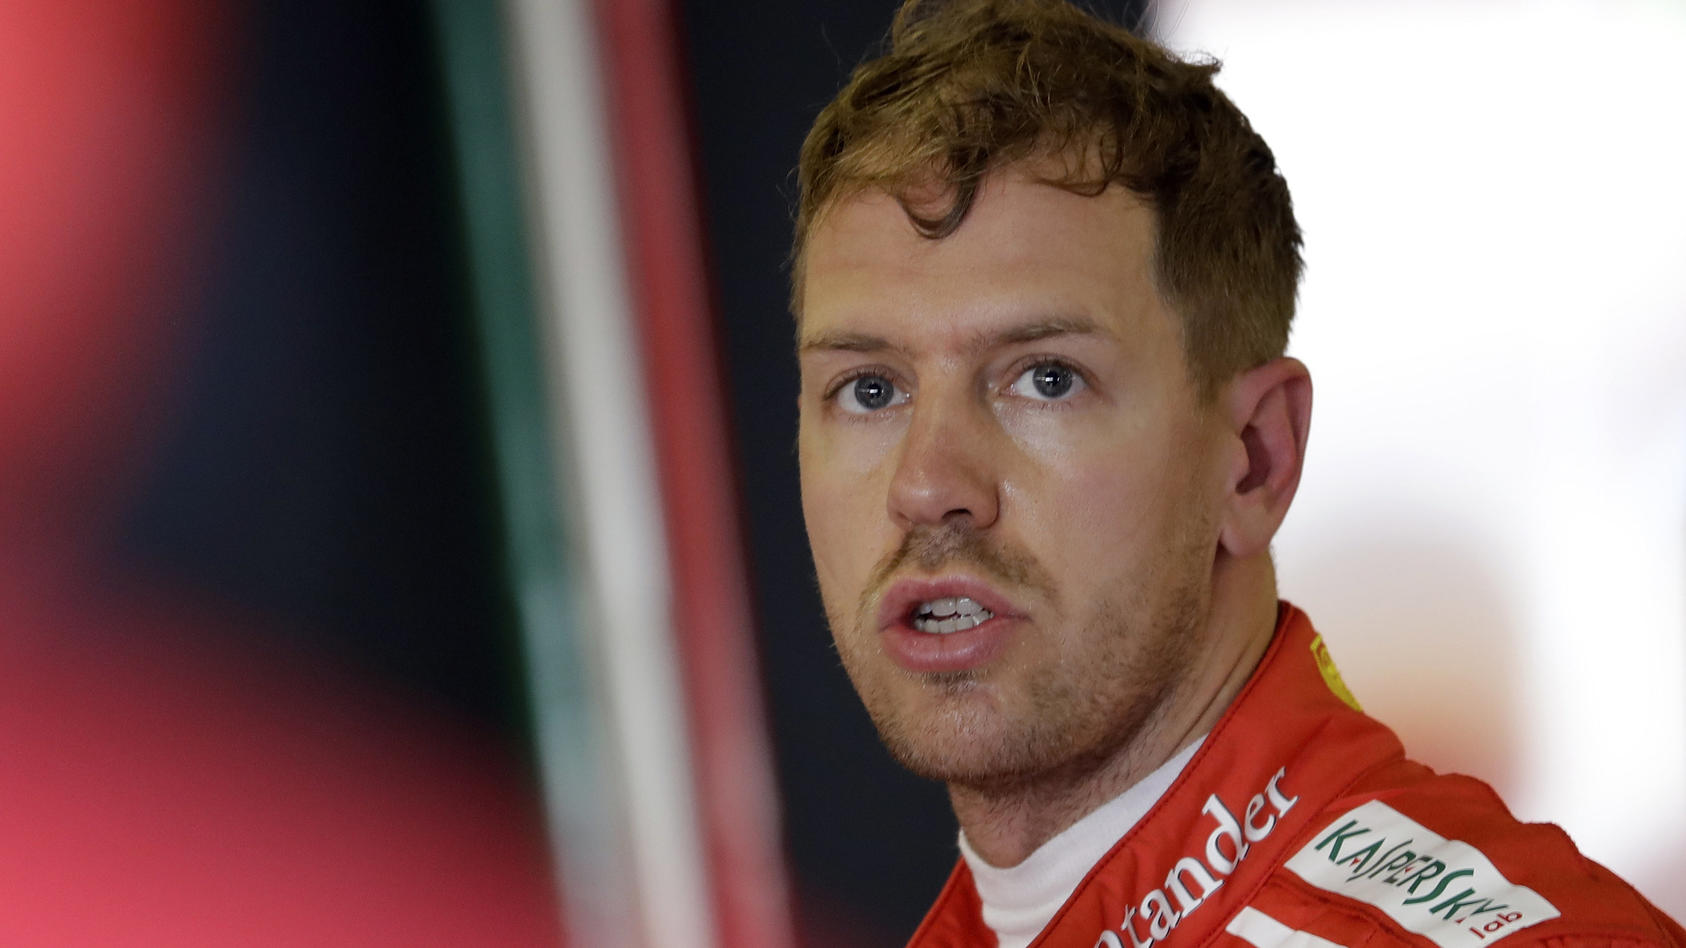 Motorsport: Formel-1-Weltmeisterschaft, Grand Prix von Abu Dhabi, Saisonfinale, 1. Freies Training am 24.11.2017 in Abu Dhabi (Vereinigte Arabische Emirate). Der Deutsche Sebastian Vettel vom Team Scuderia Ferrari steht beim Training im Fahrerlager. 